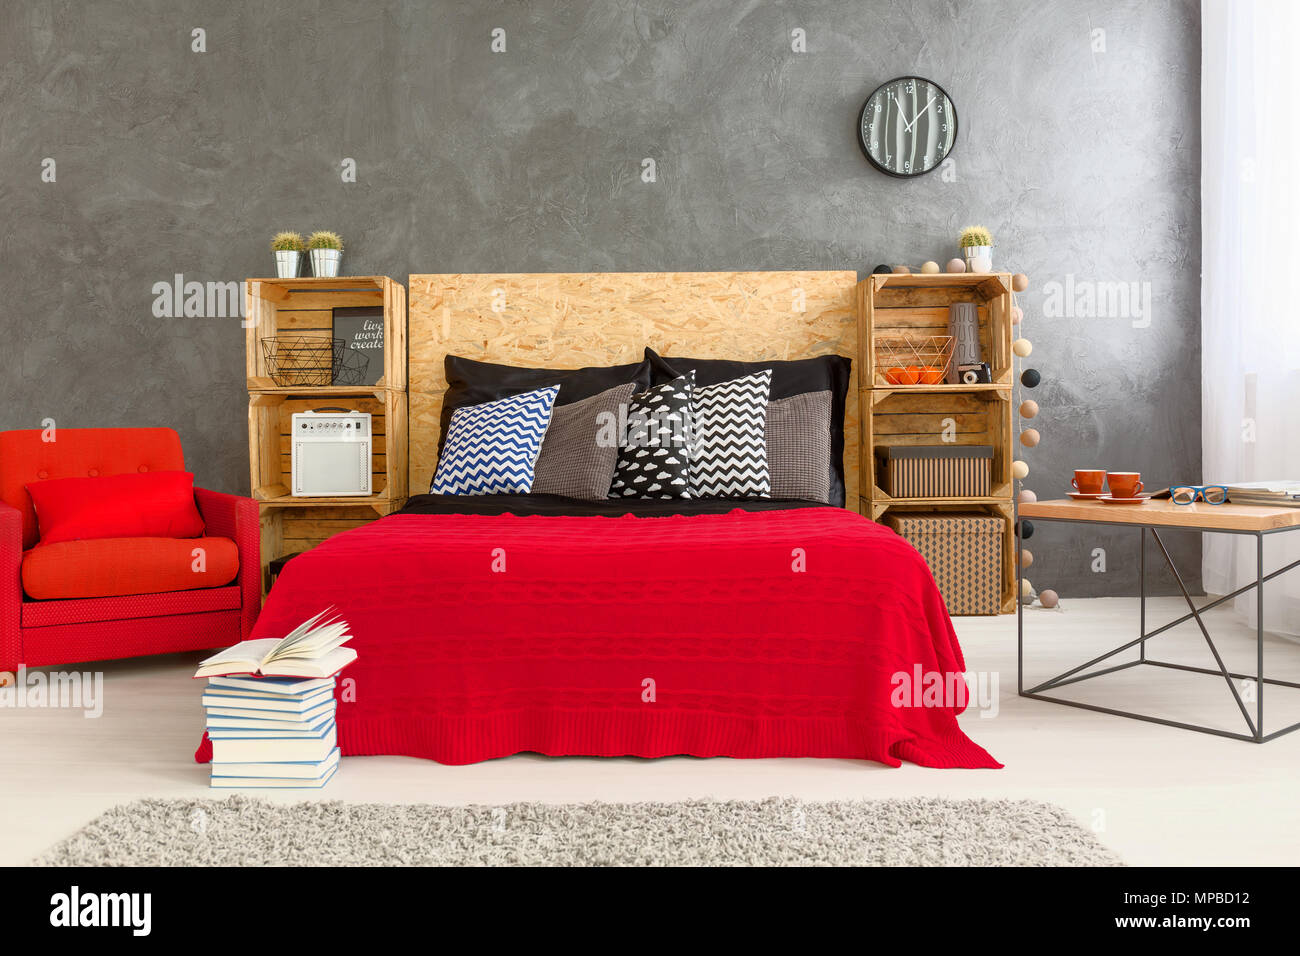 Habitación diseño moderno con cama sillón rojo sobre la pared gris de fondo. Estantes de madera hecha de de madera y cabecera de madera de la cama Fotografía de